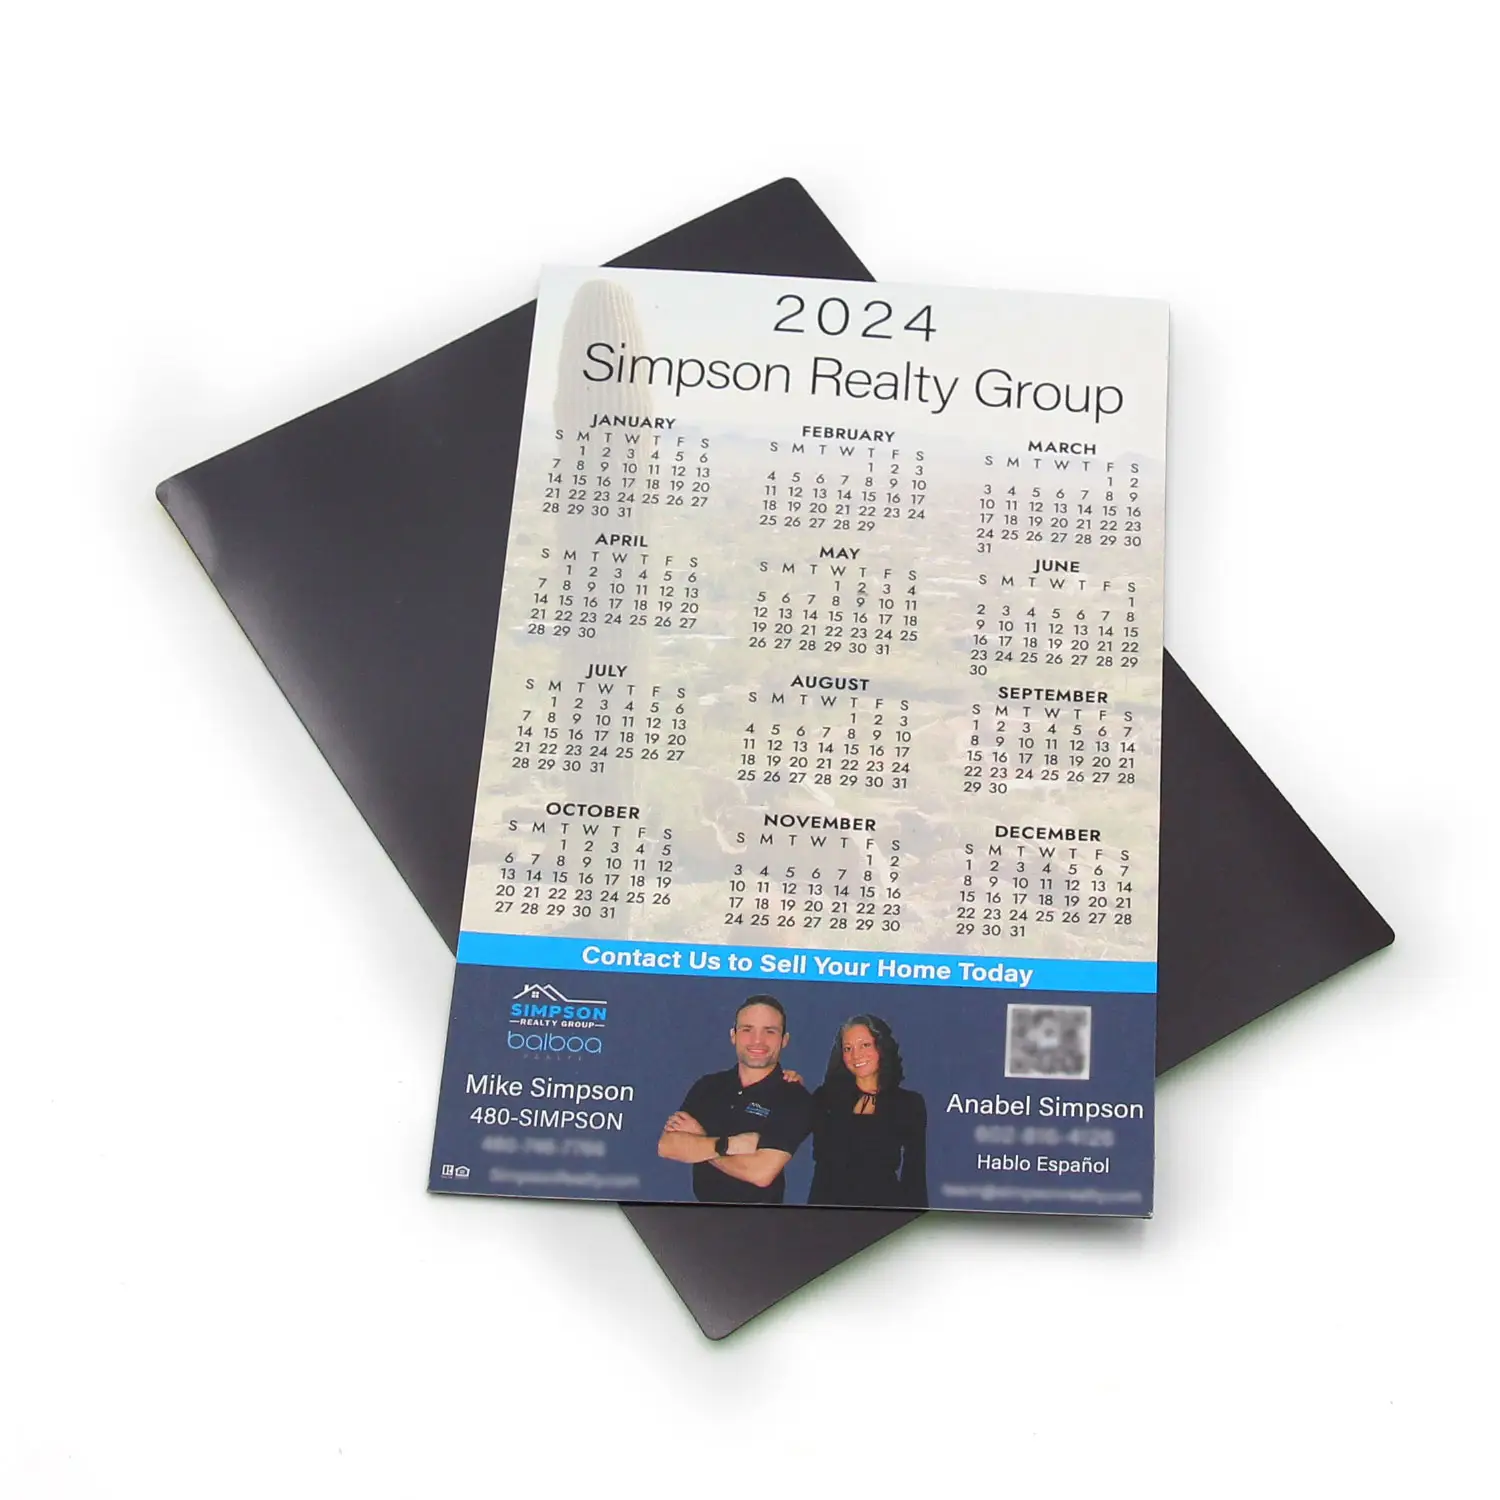 Prodotti promozionali magneti frigo Calender regali immobiliari con marchio calendario frigo magnetico